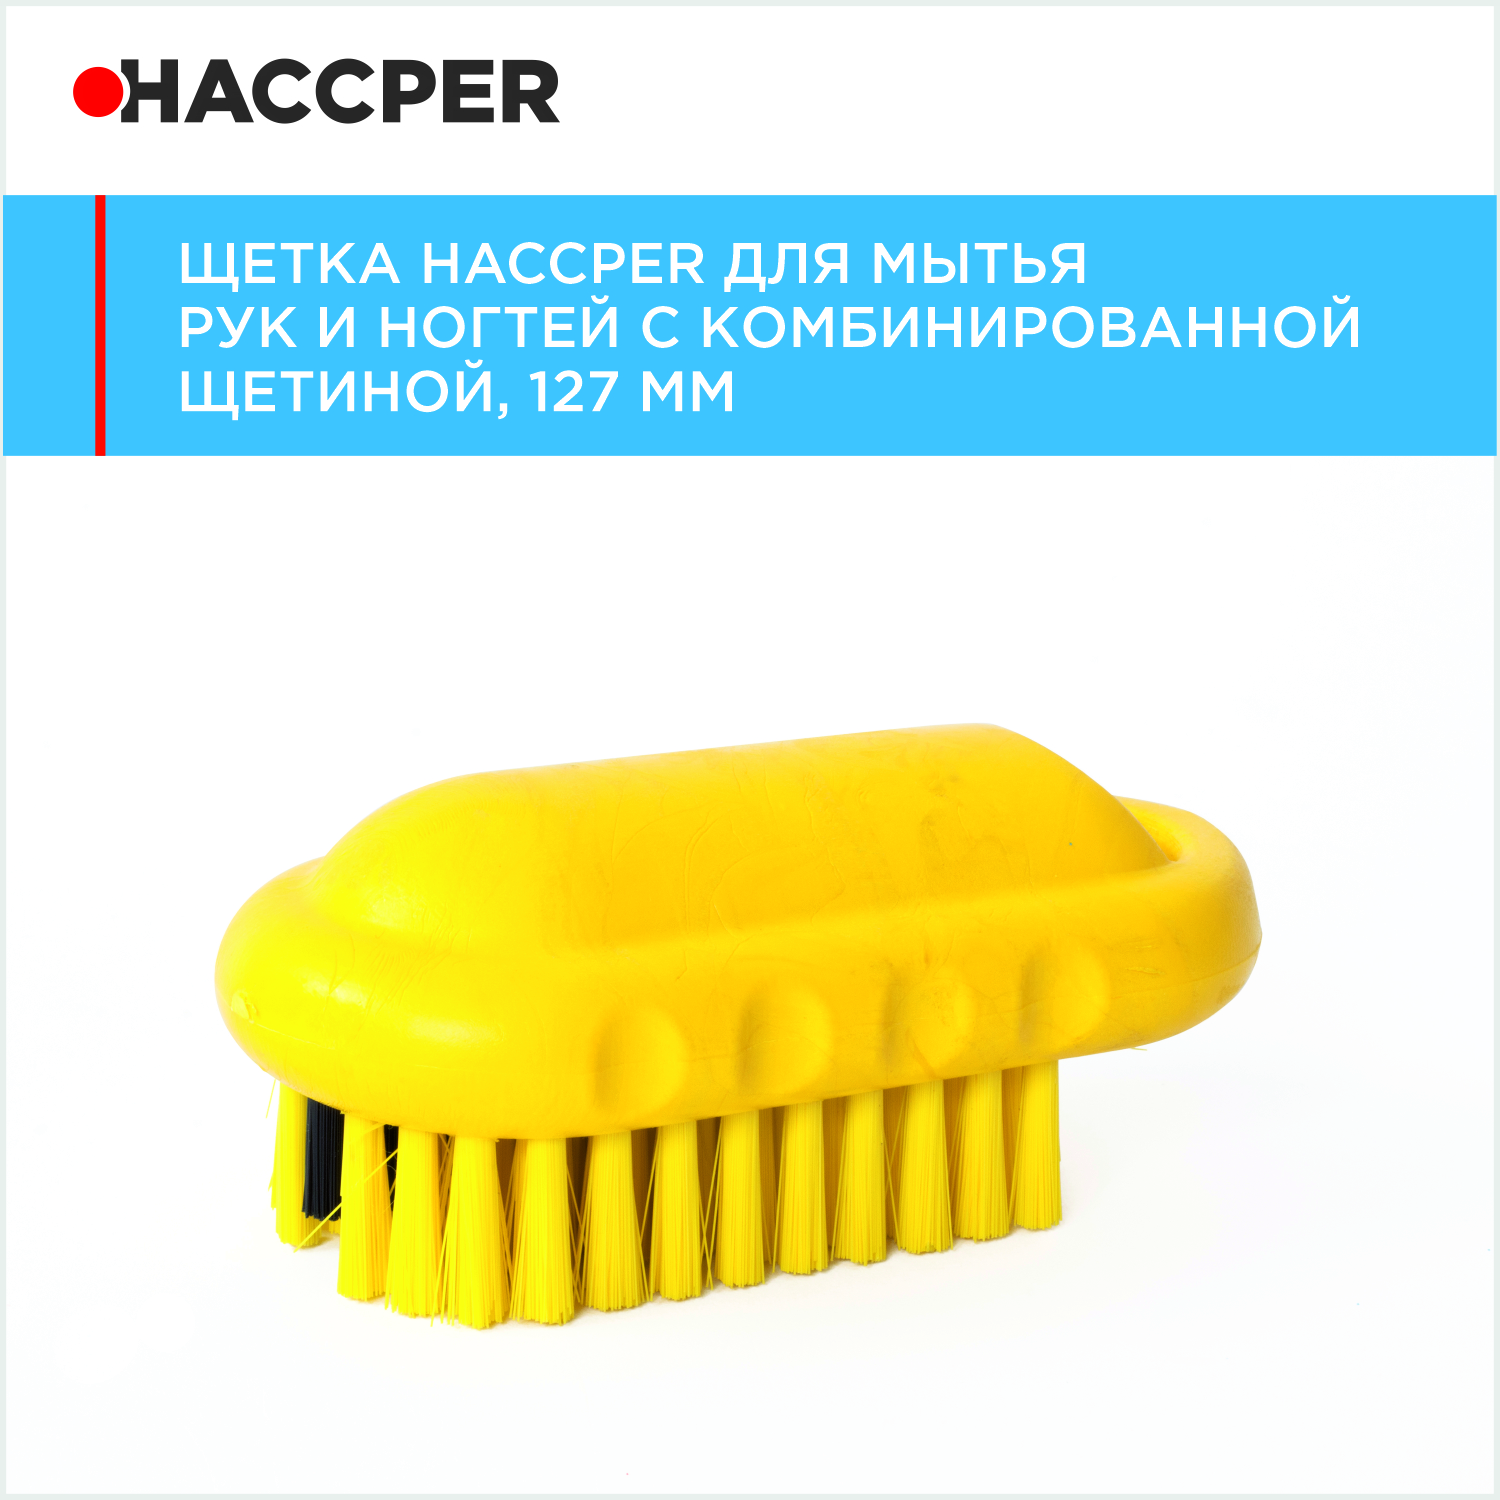 Щетка HACCPER для мытья рук и ногтей с комбинированной щетиной, 127 мм, желтая